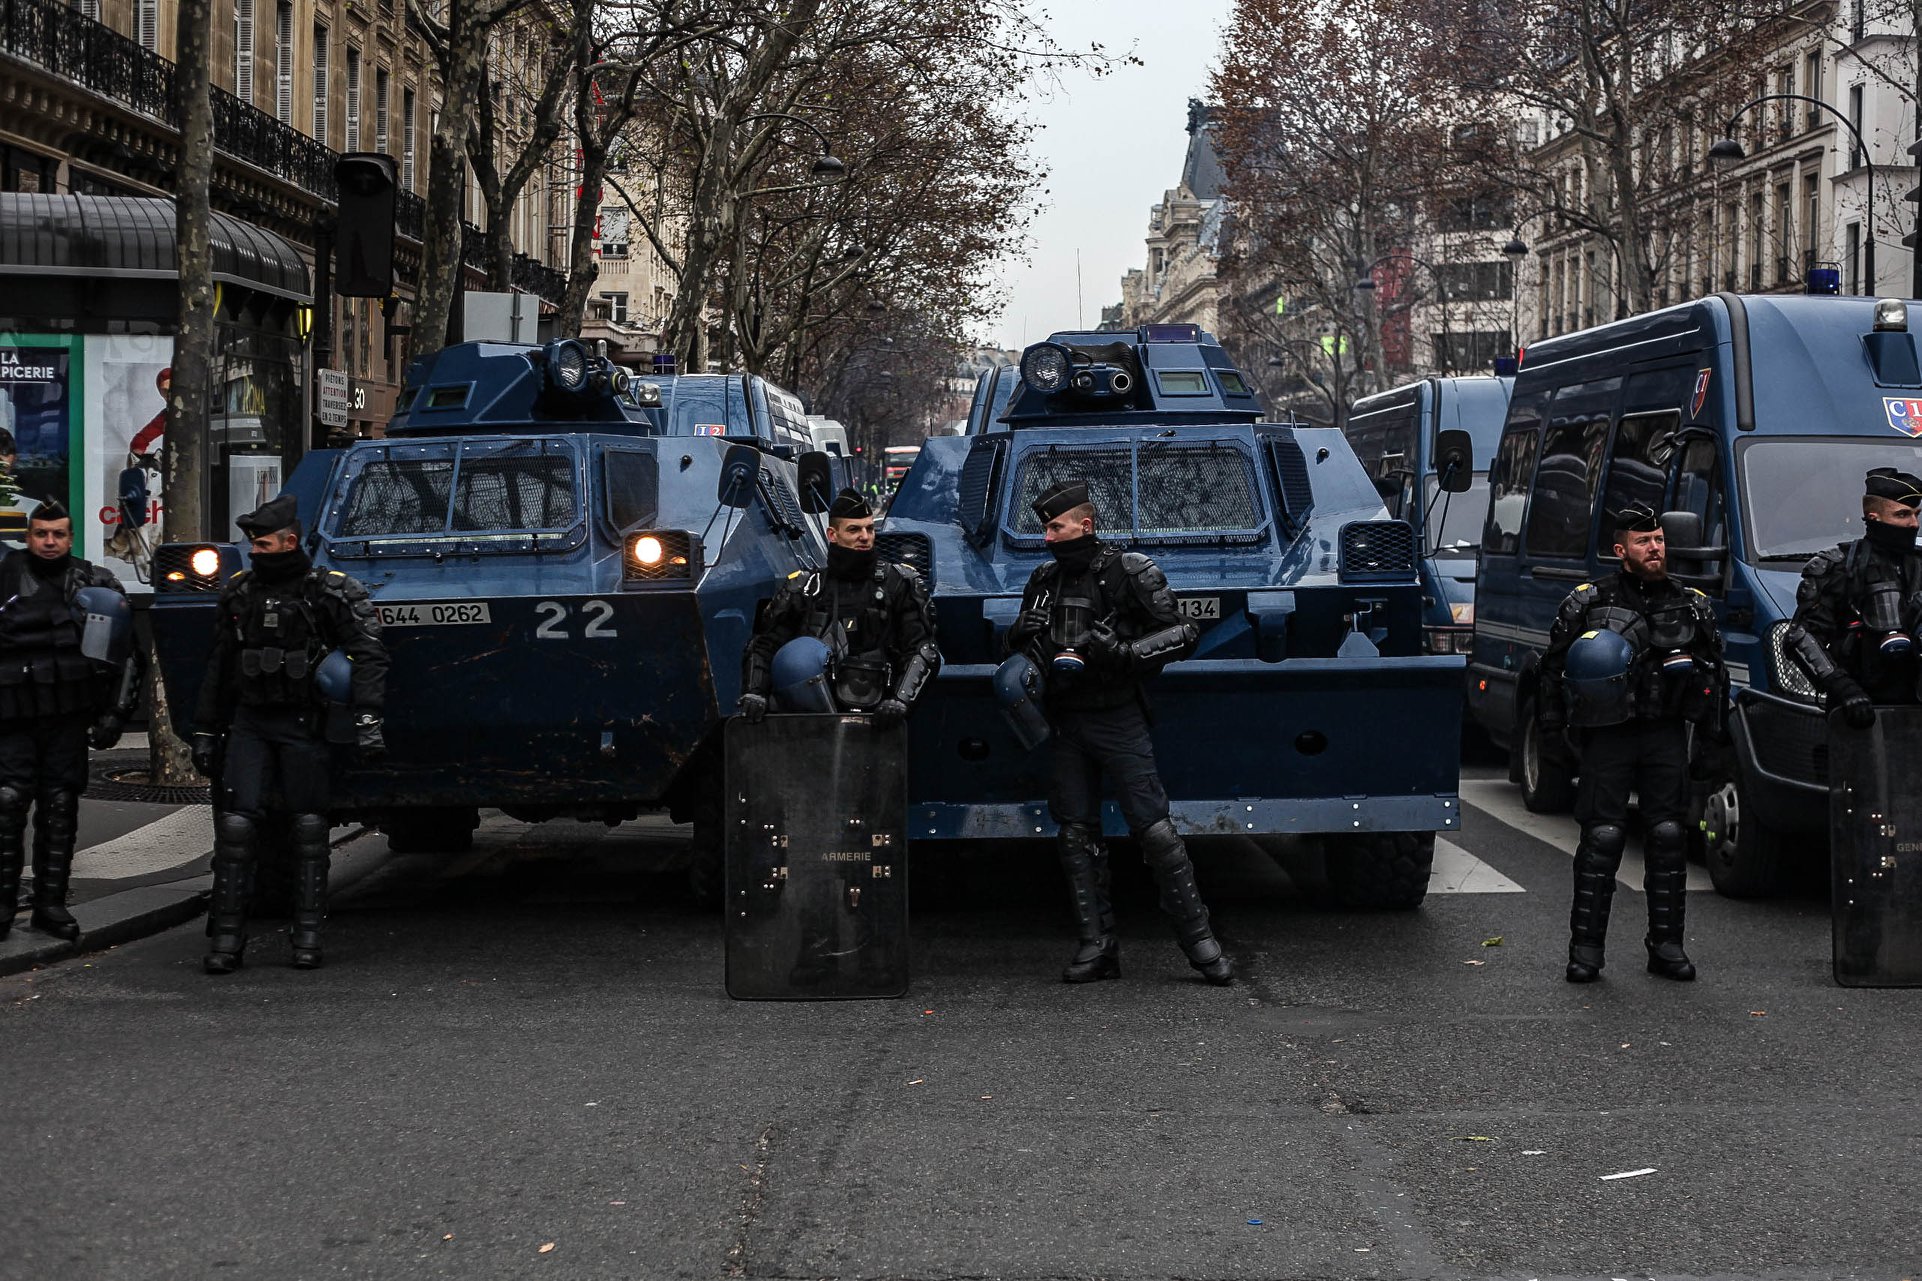 Frankreich: Gelbe Westen überall, trotz der Polizeibelagerung